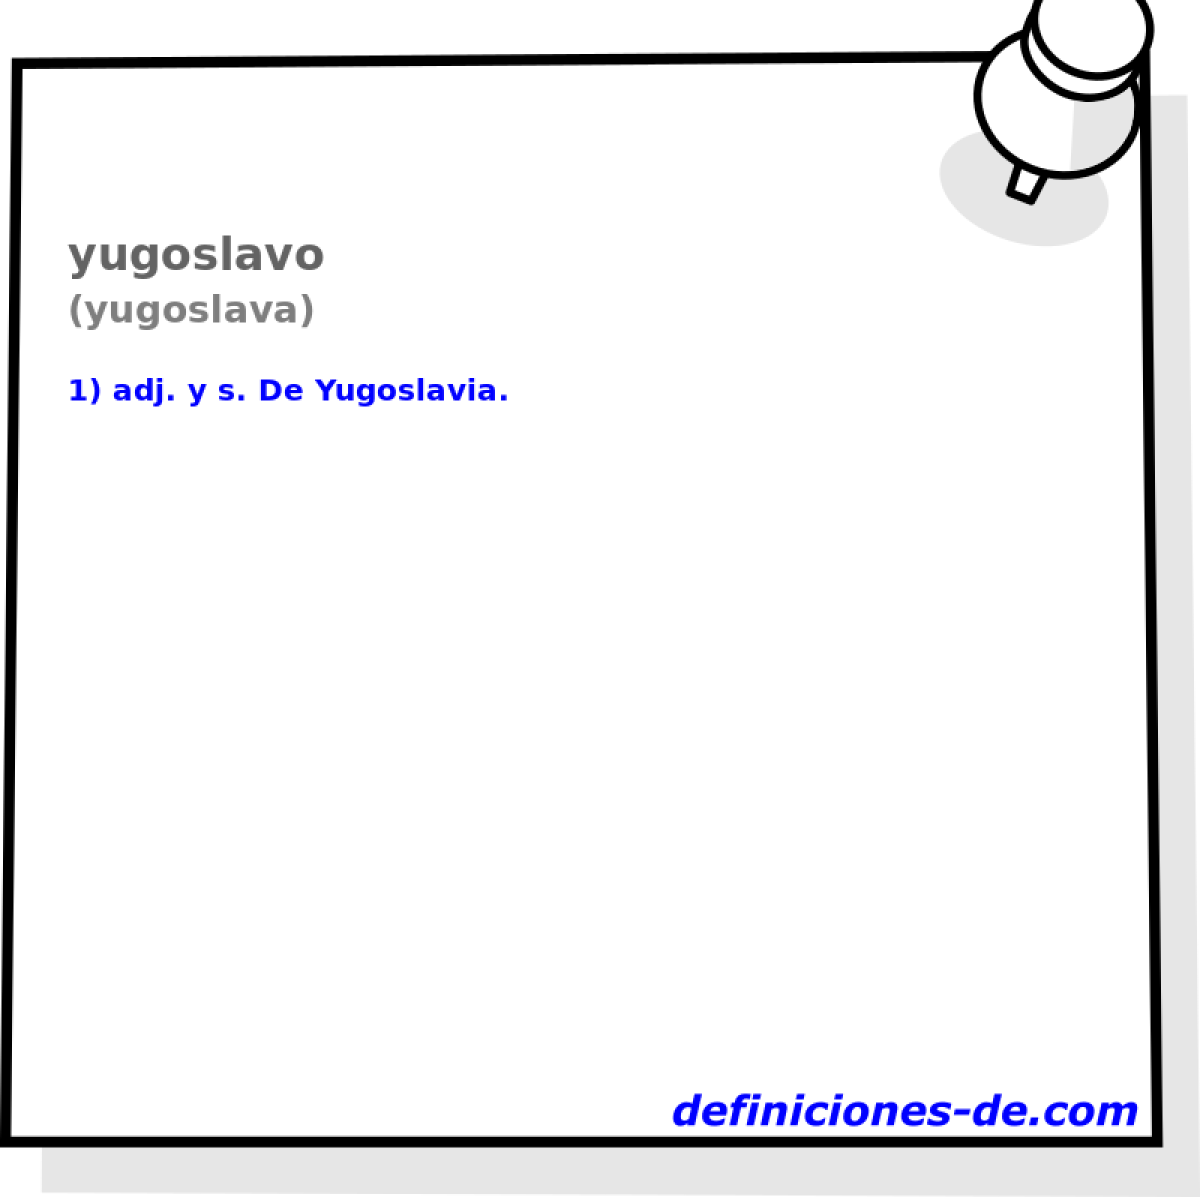 yugoslavo (yugoslava)